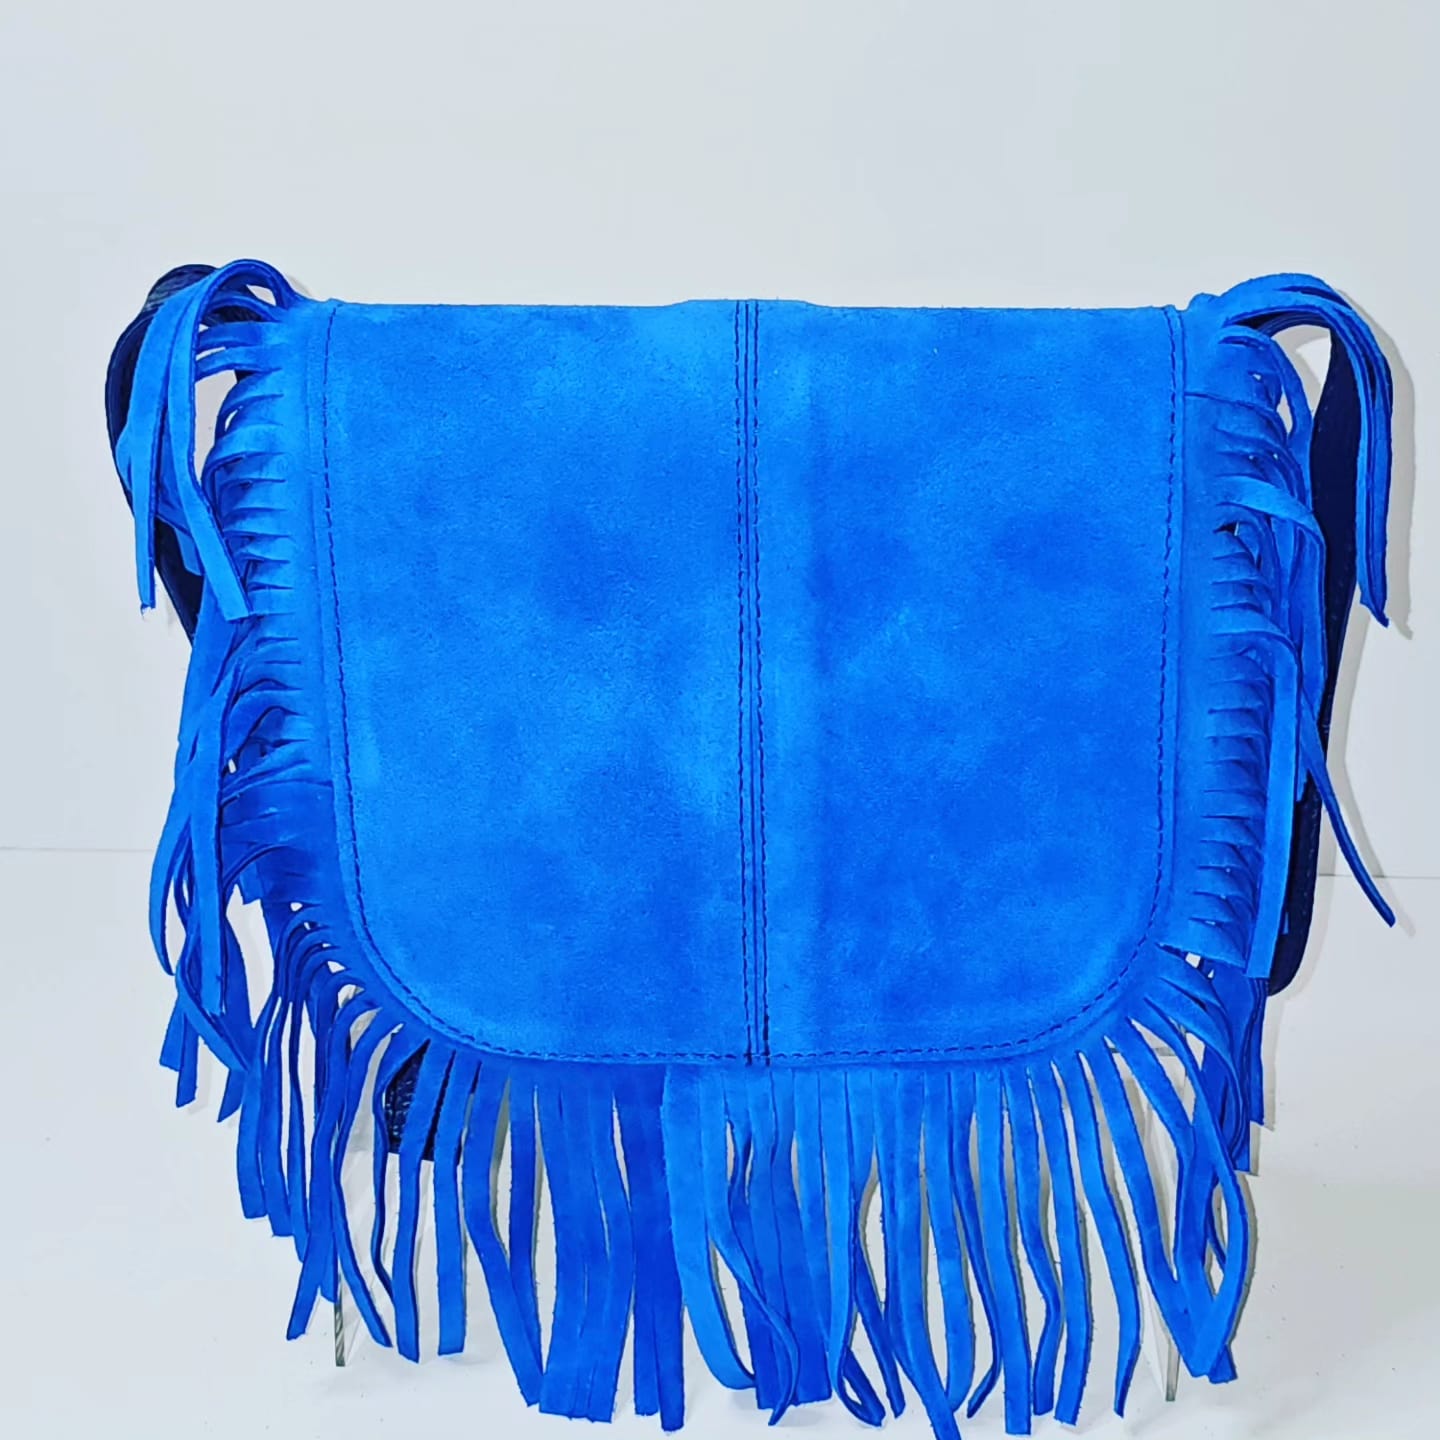 Velvet and leather Ladies handbag